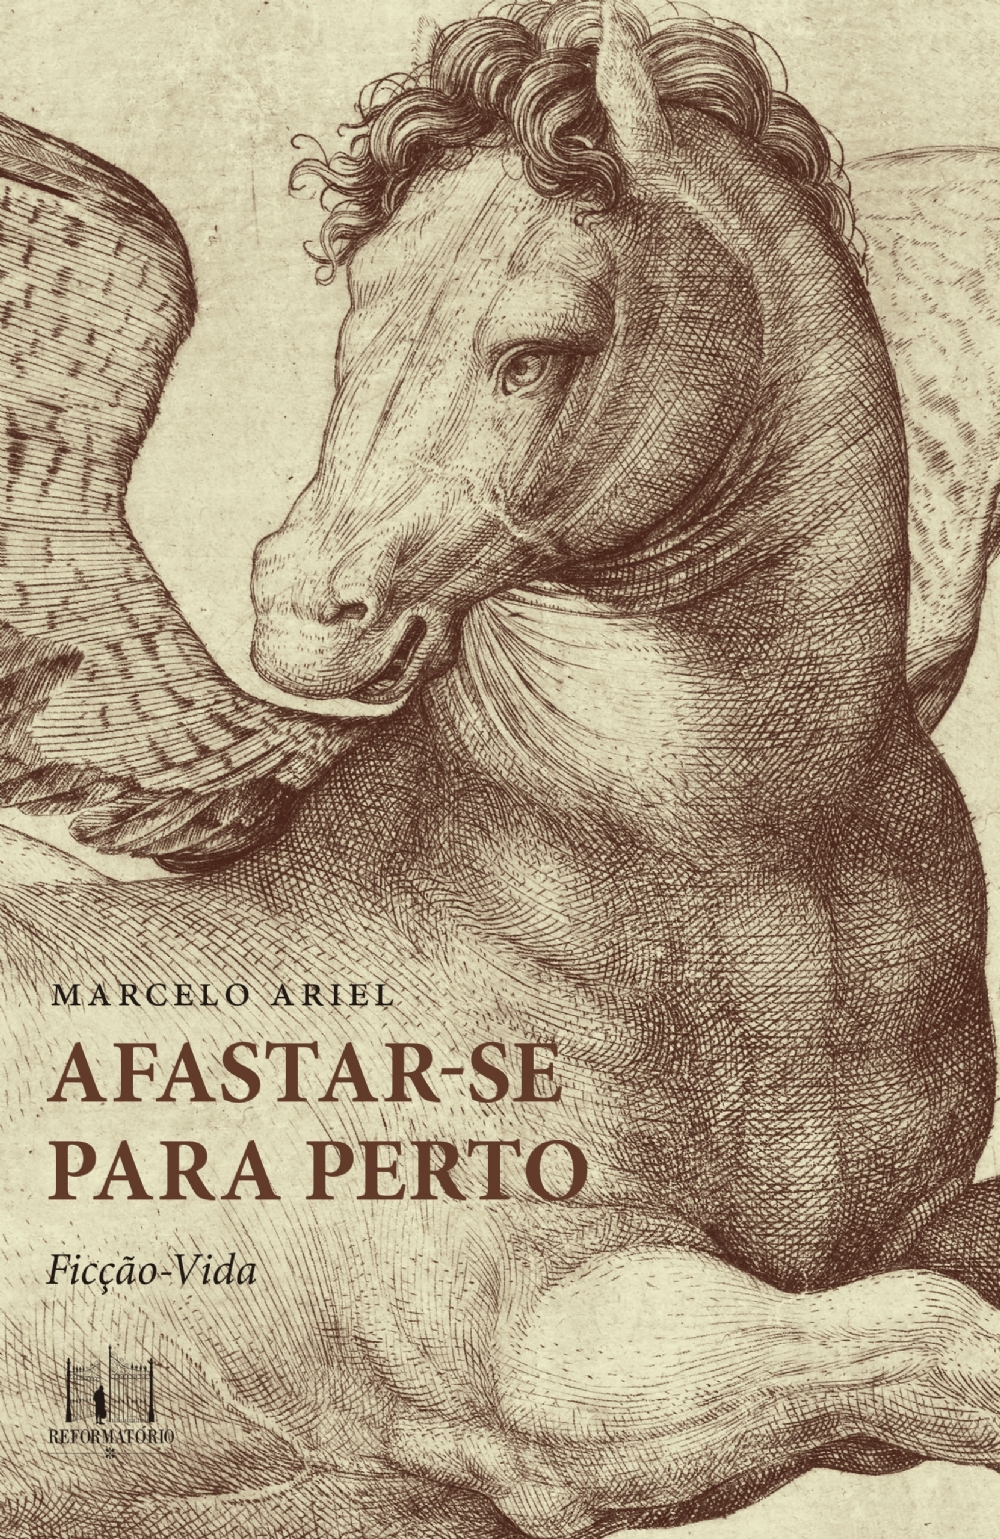 Marcelo Ariel - Livro de ensaios-contos 'Afastar-se para perto' faz uma bela radiografia da cultura brasileira em tintas poéticas e surreais